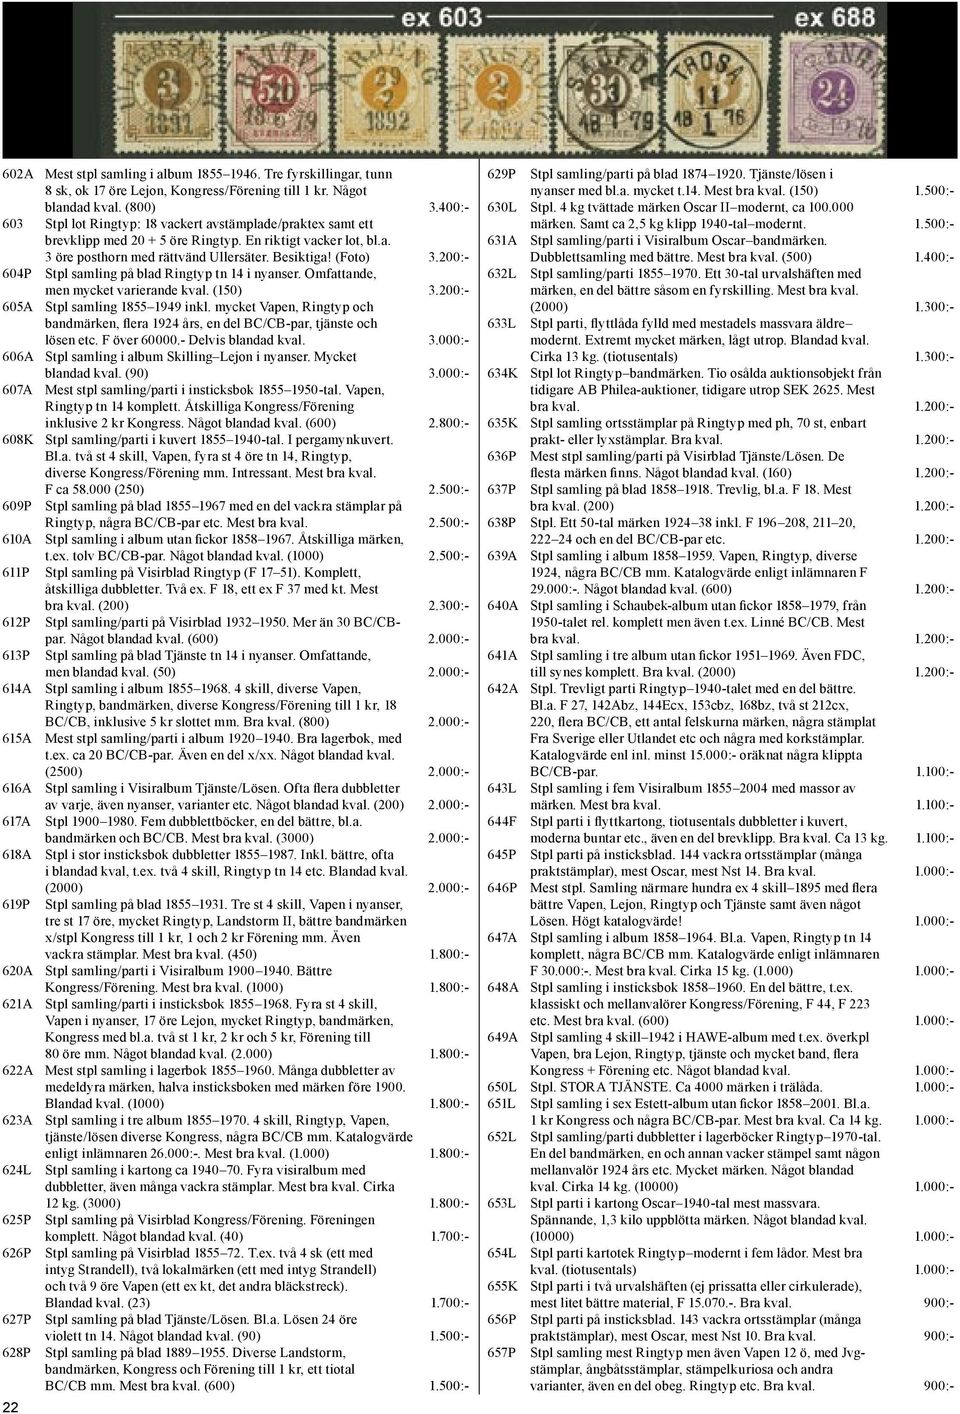 200:- 604P Stpl samling på blad Ringtyp tn 14 i nyanser. Omfattande, men mycket varierande kval. (150) 3.200:- 605A Stpl samling 1855 1949 inkl.